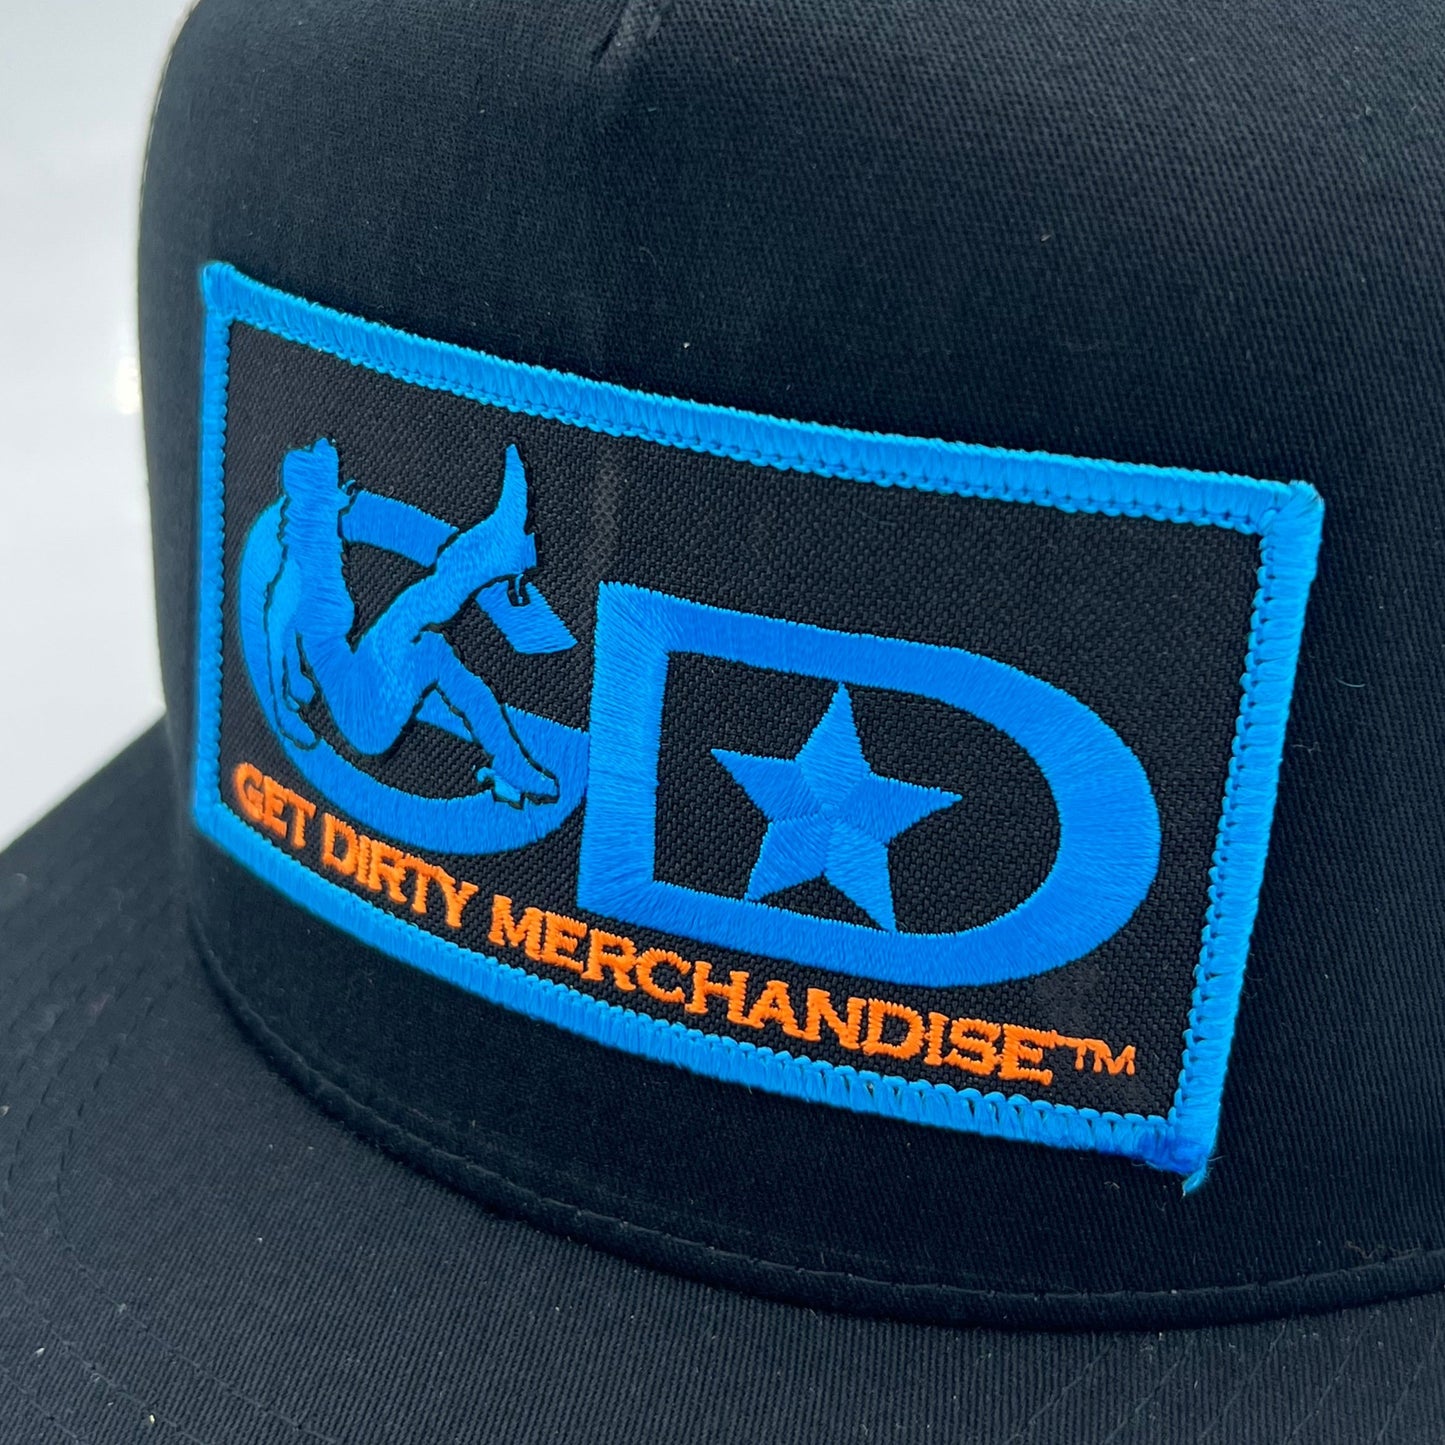 Get Dirty Merchandise BLU Vanilla Blk/Blk Trucker Hat